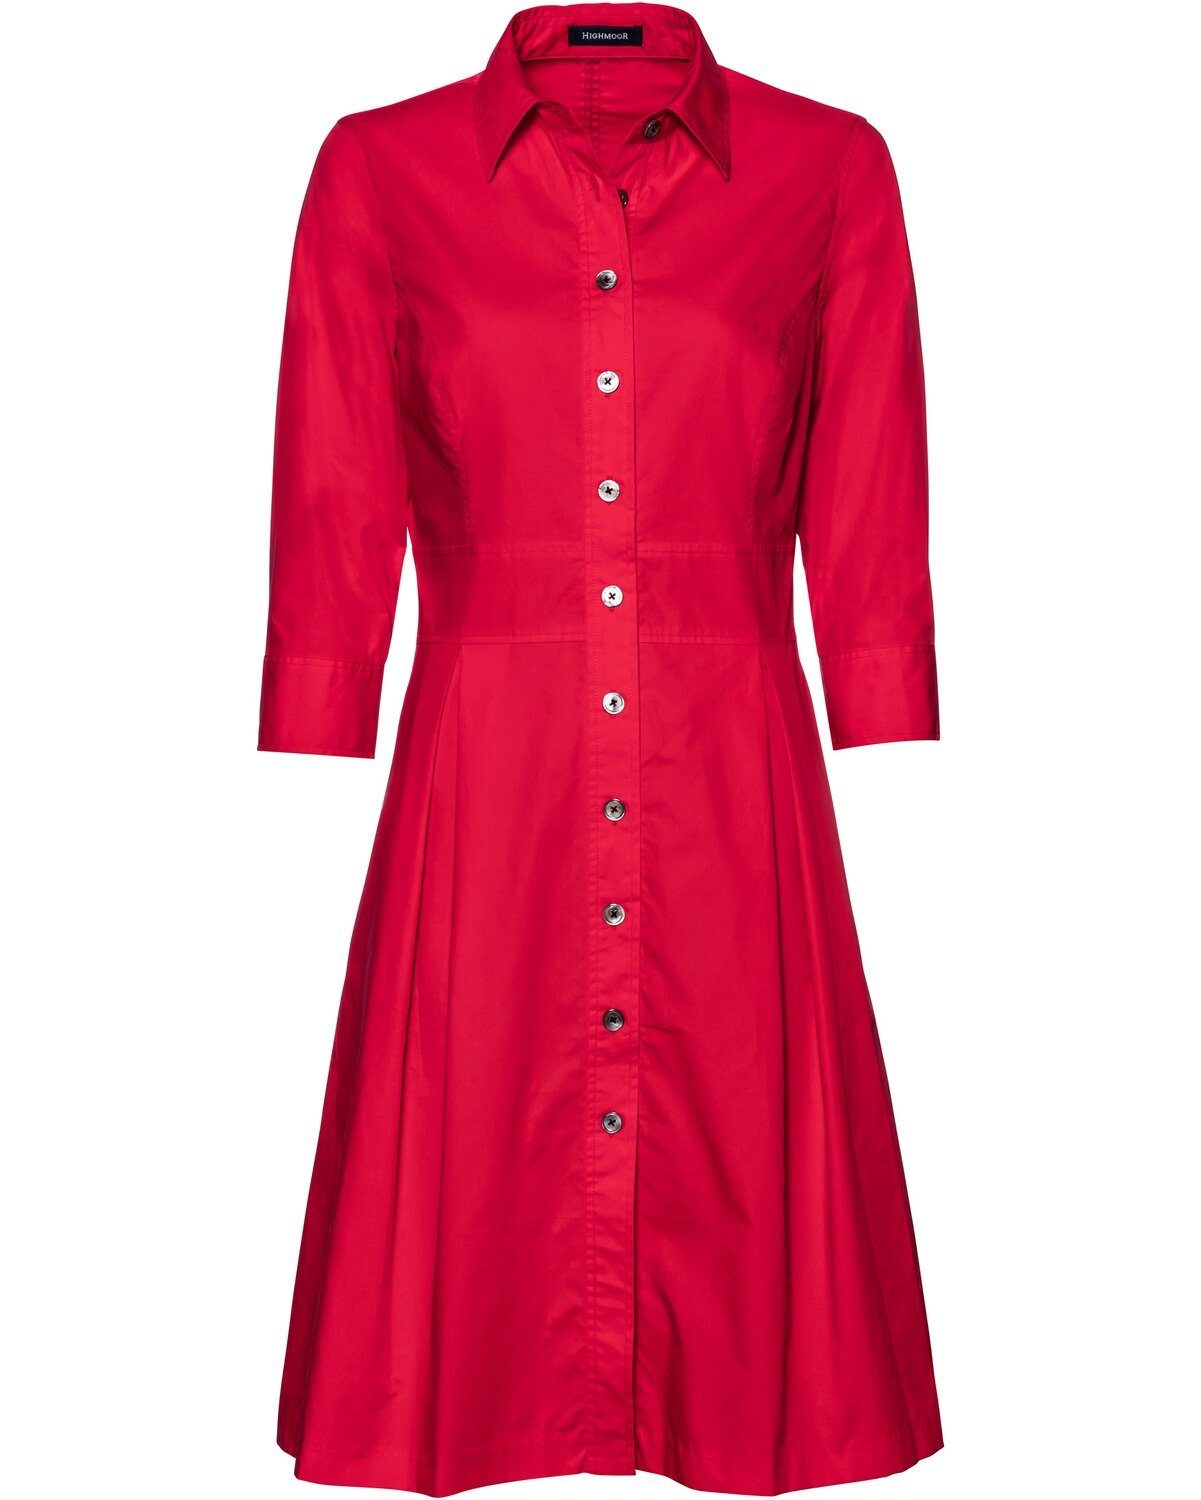 Damen Kleider Highmoor Hemdblusenkleid Hemdblusenkleid